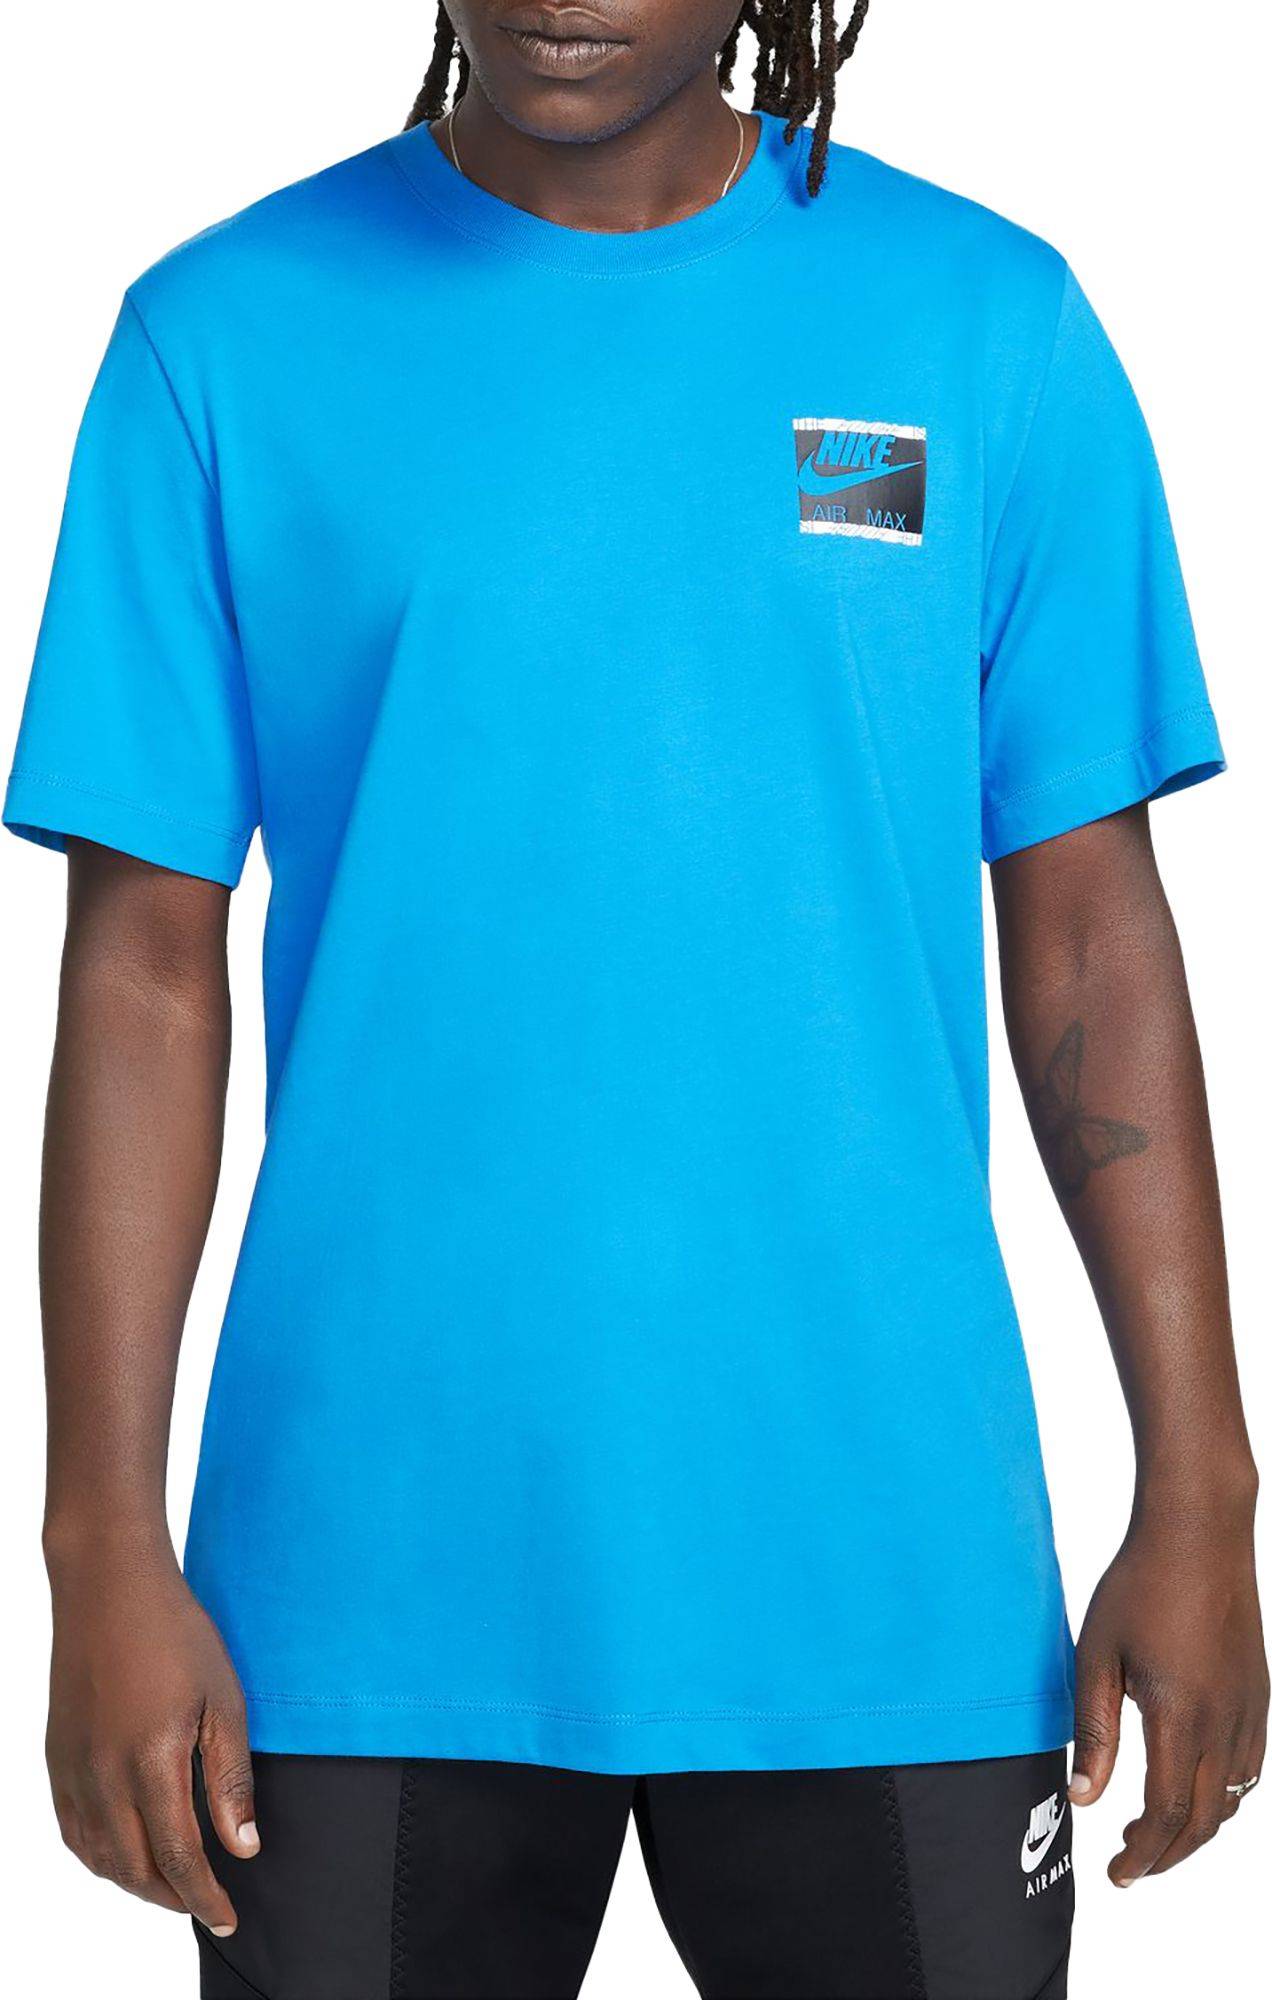 Nike Sportswear Air Max Day T-shirt - Light Photo Blue • Pris